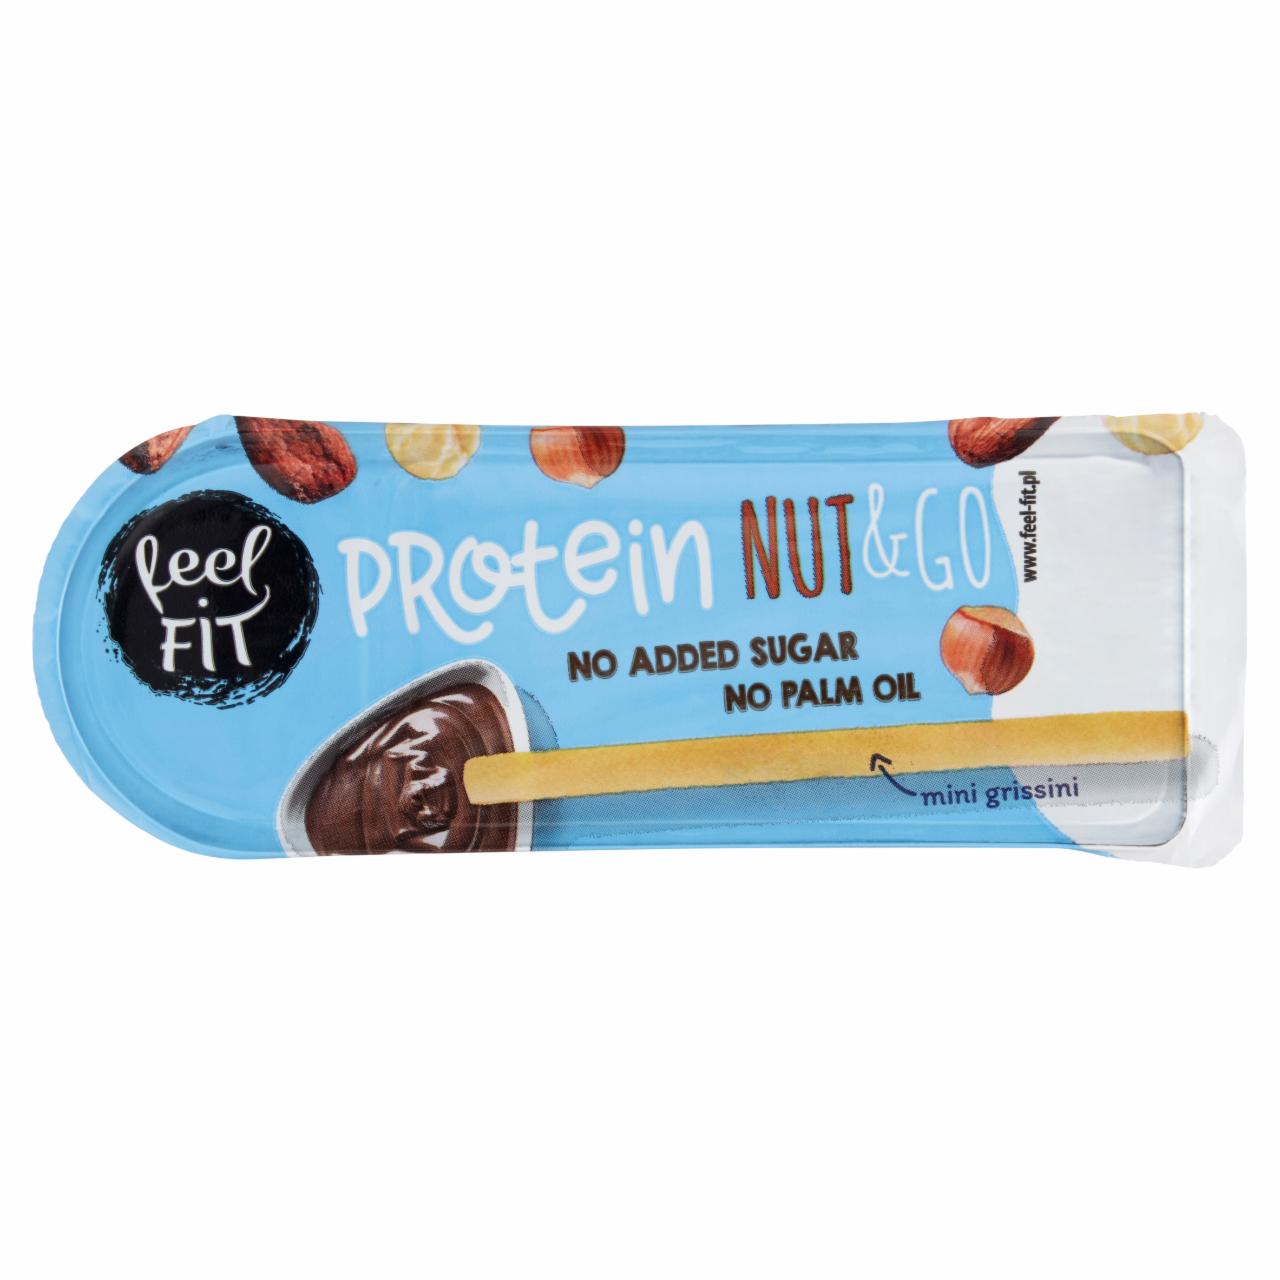 Zdjęcia - Feel Fit Protein Nut & Go Proteinowy krem z orzechami laskowymi i z mini grissini 25 g